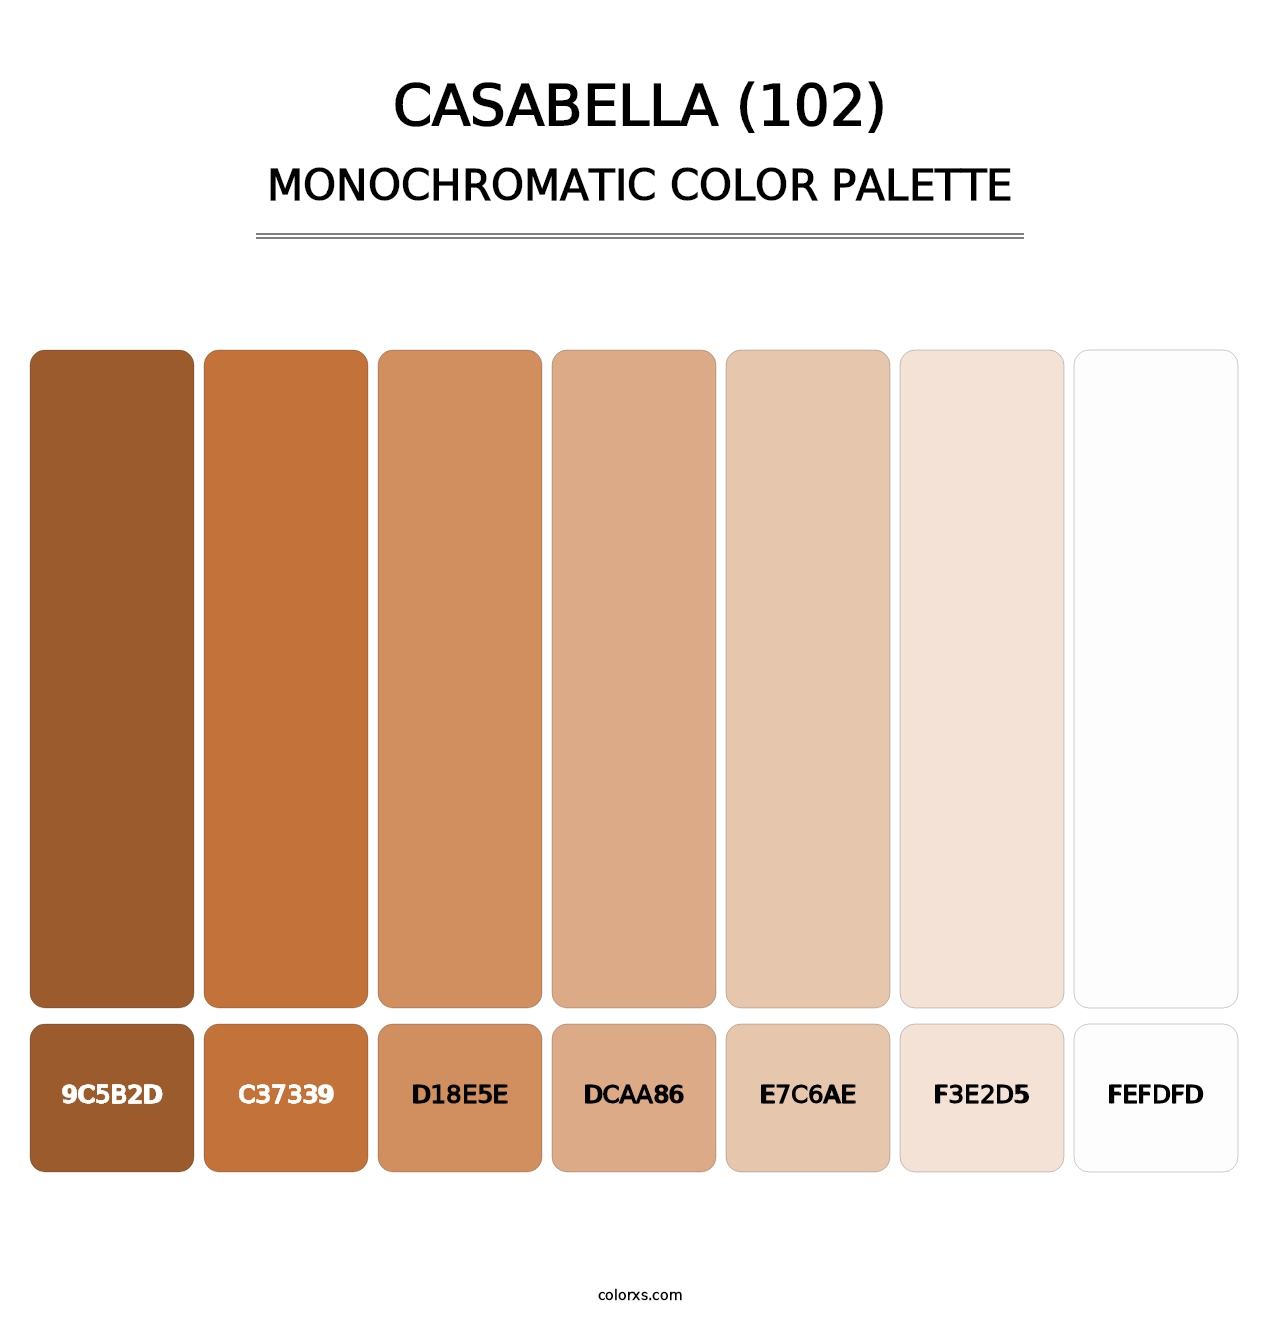 Casabella (102) - Monochromatic Color Palette